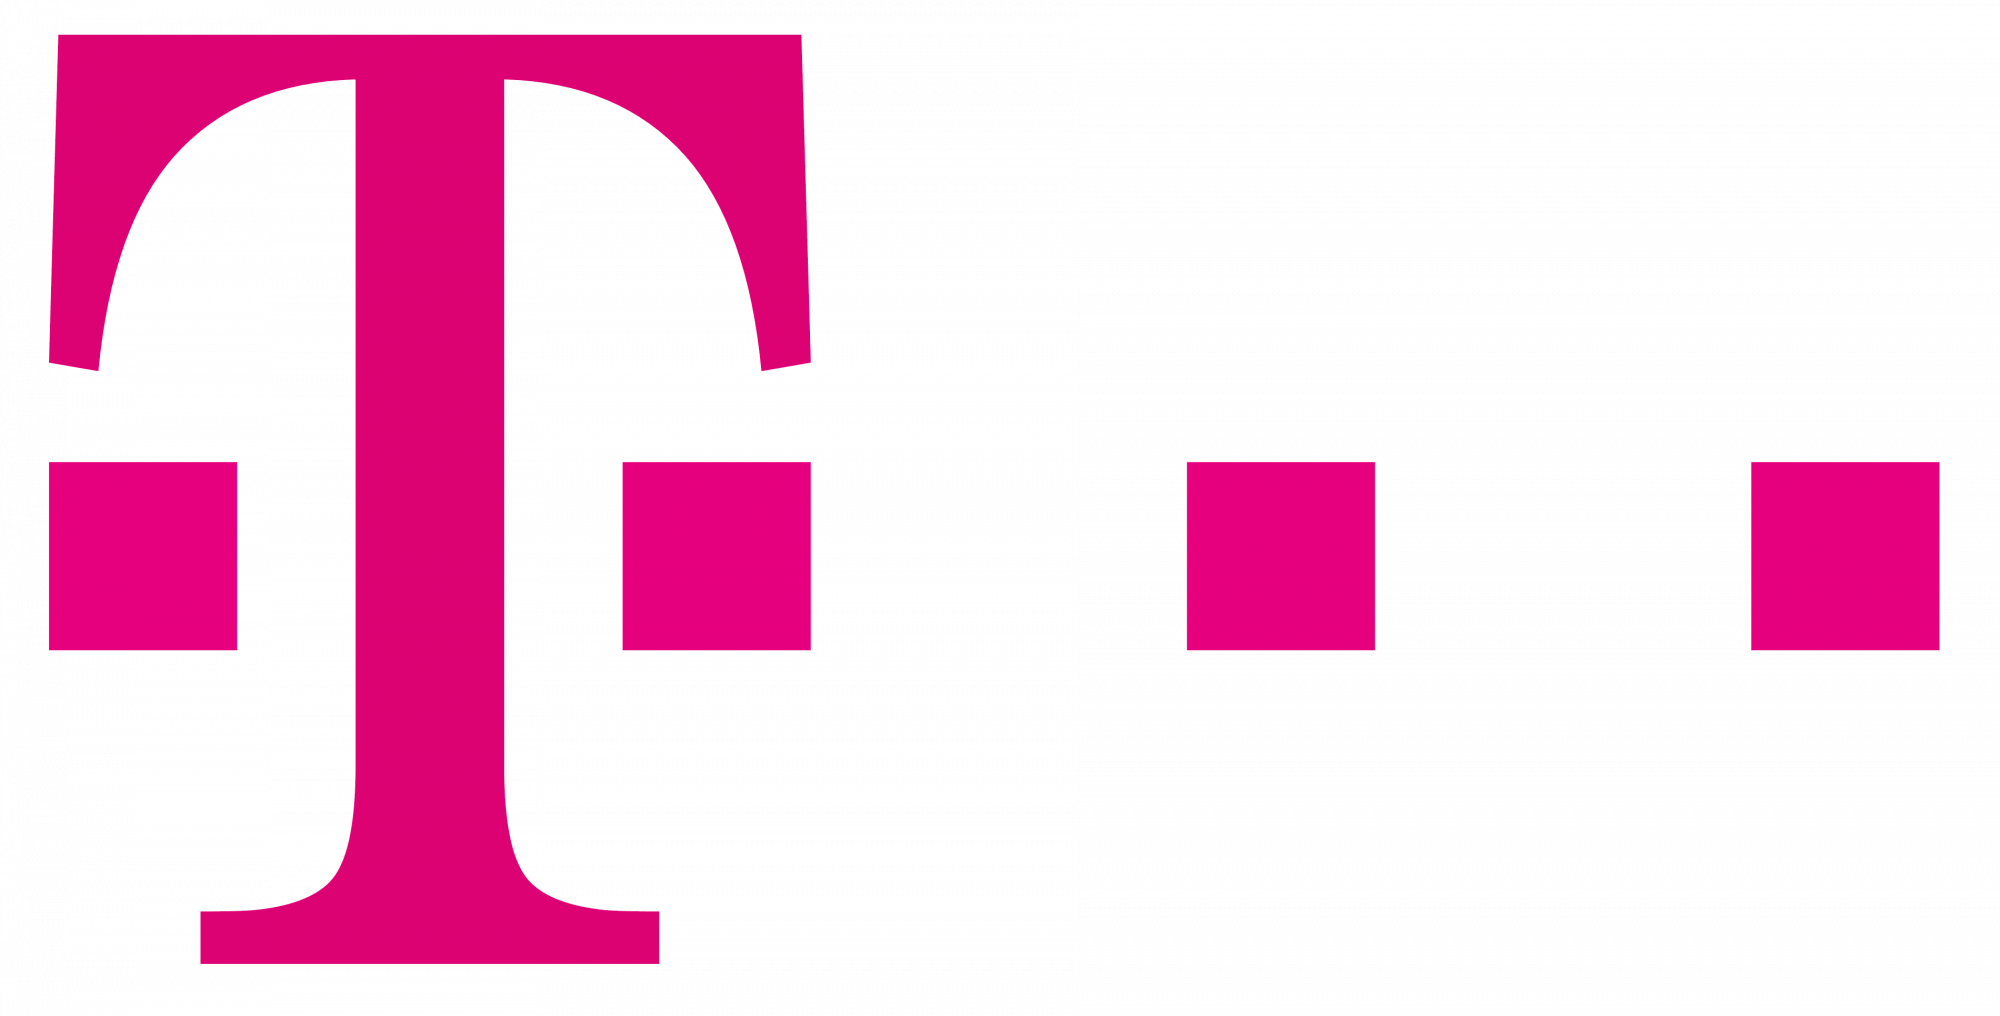 Deutsche telekom logo